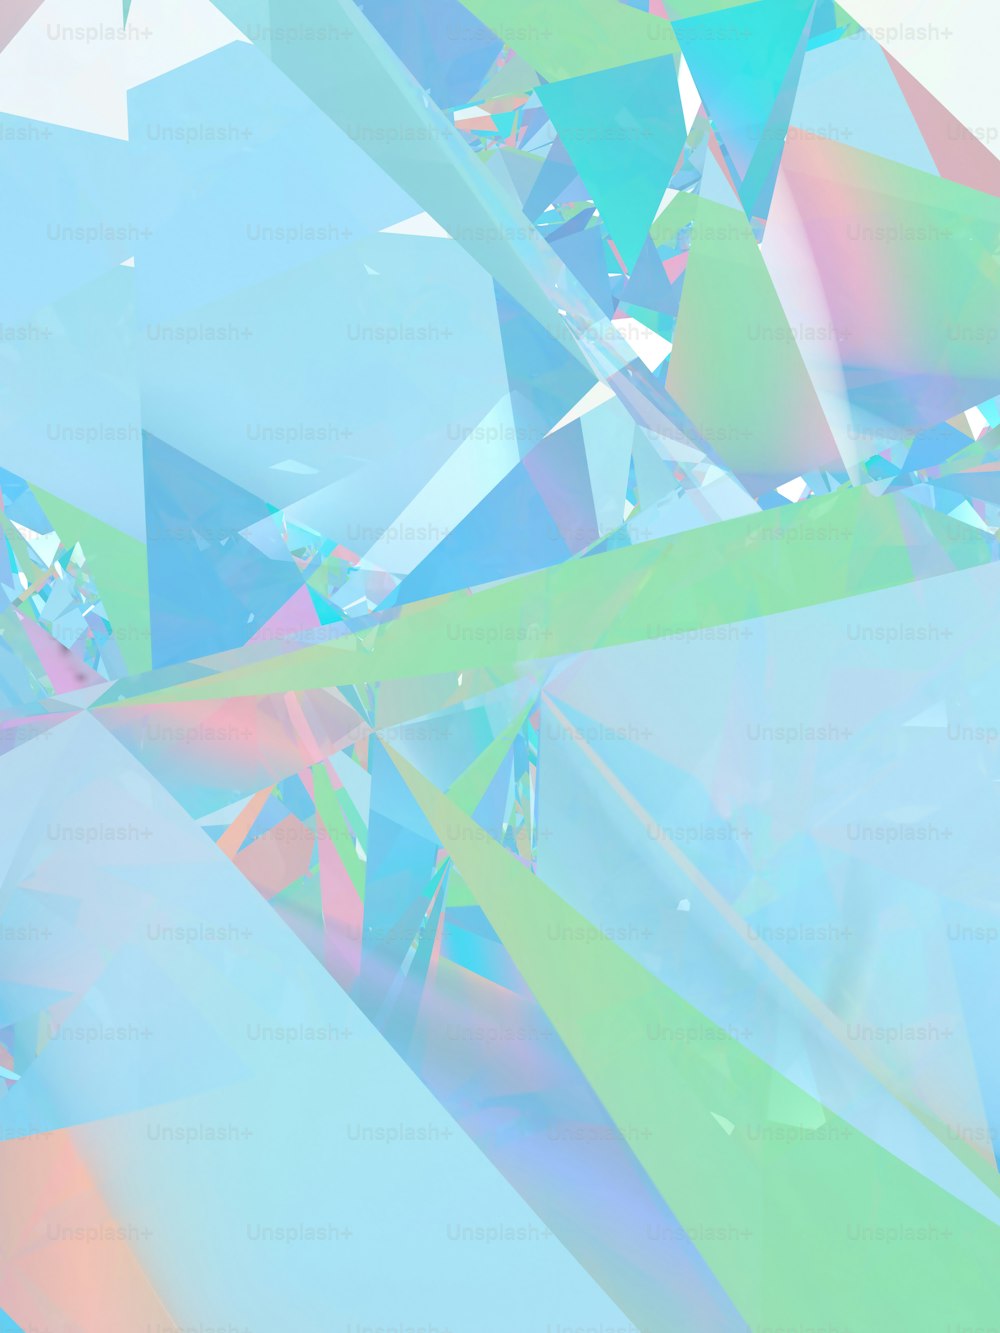 Un'immagine multicolore di un oggetto simile a un diamante